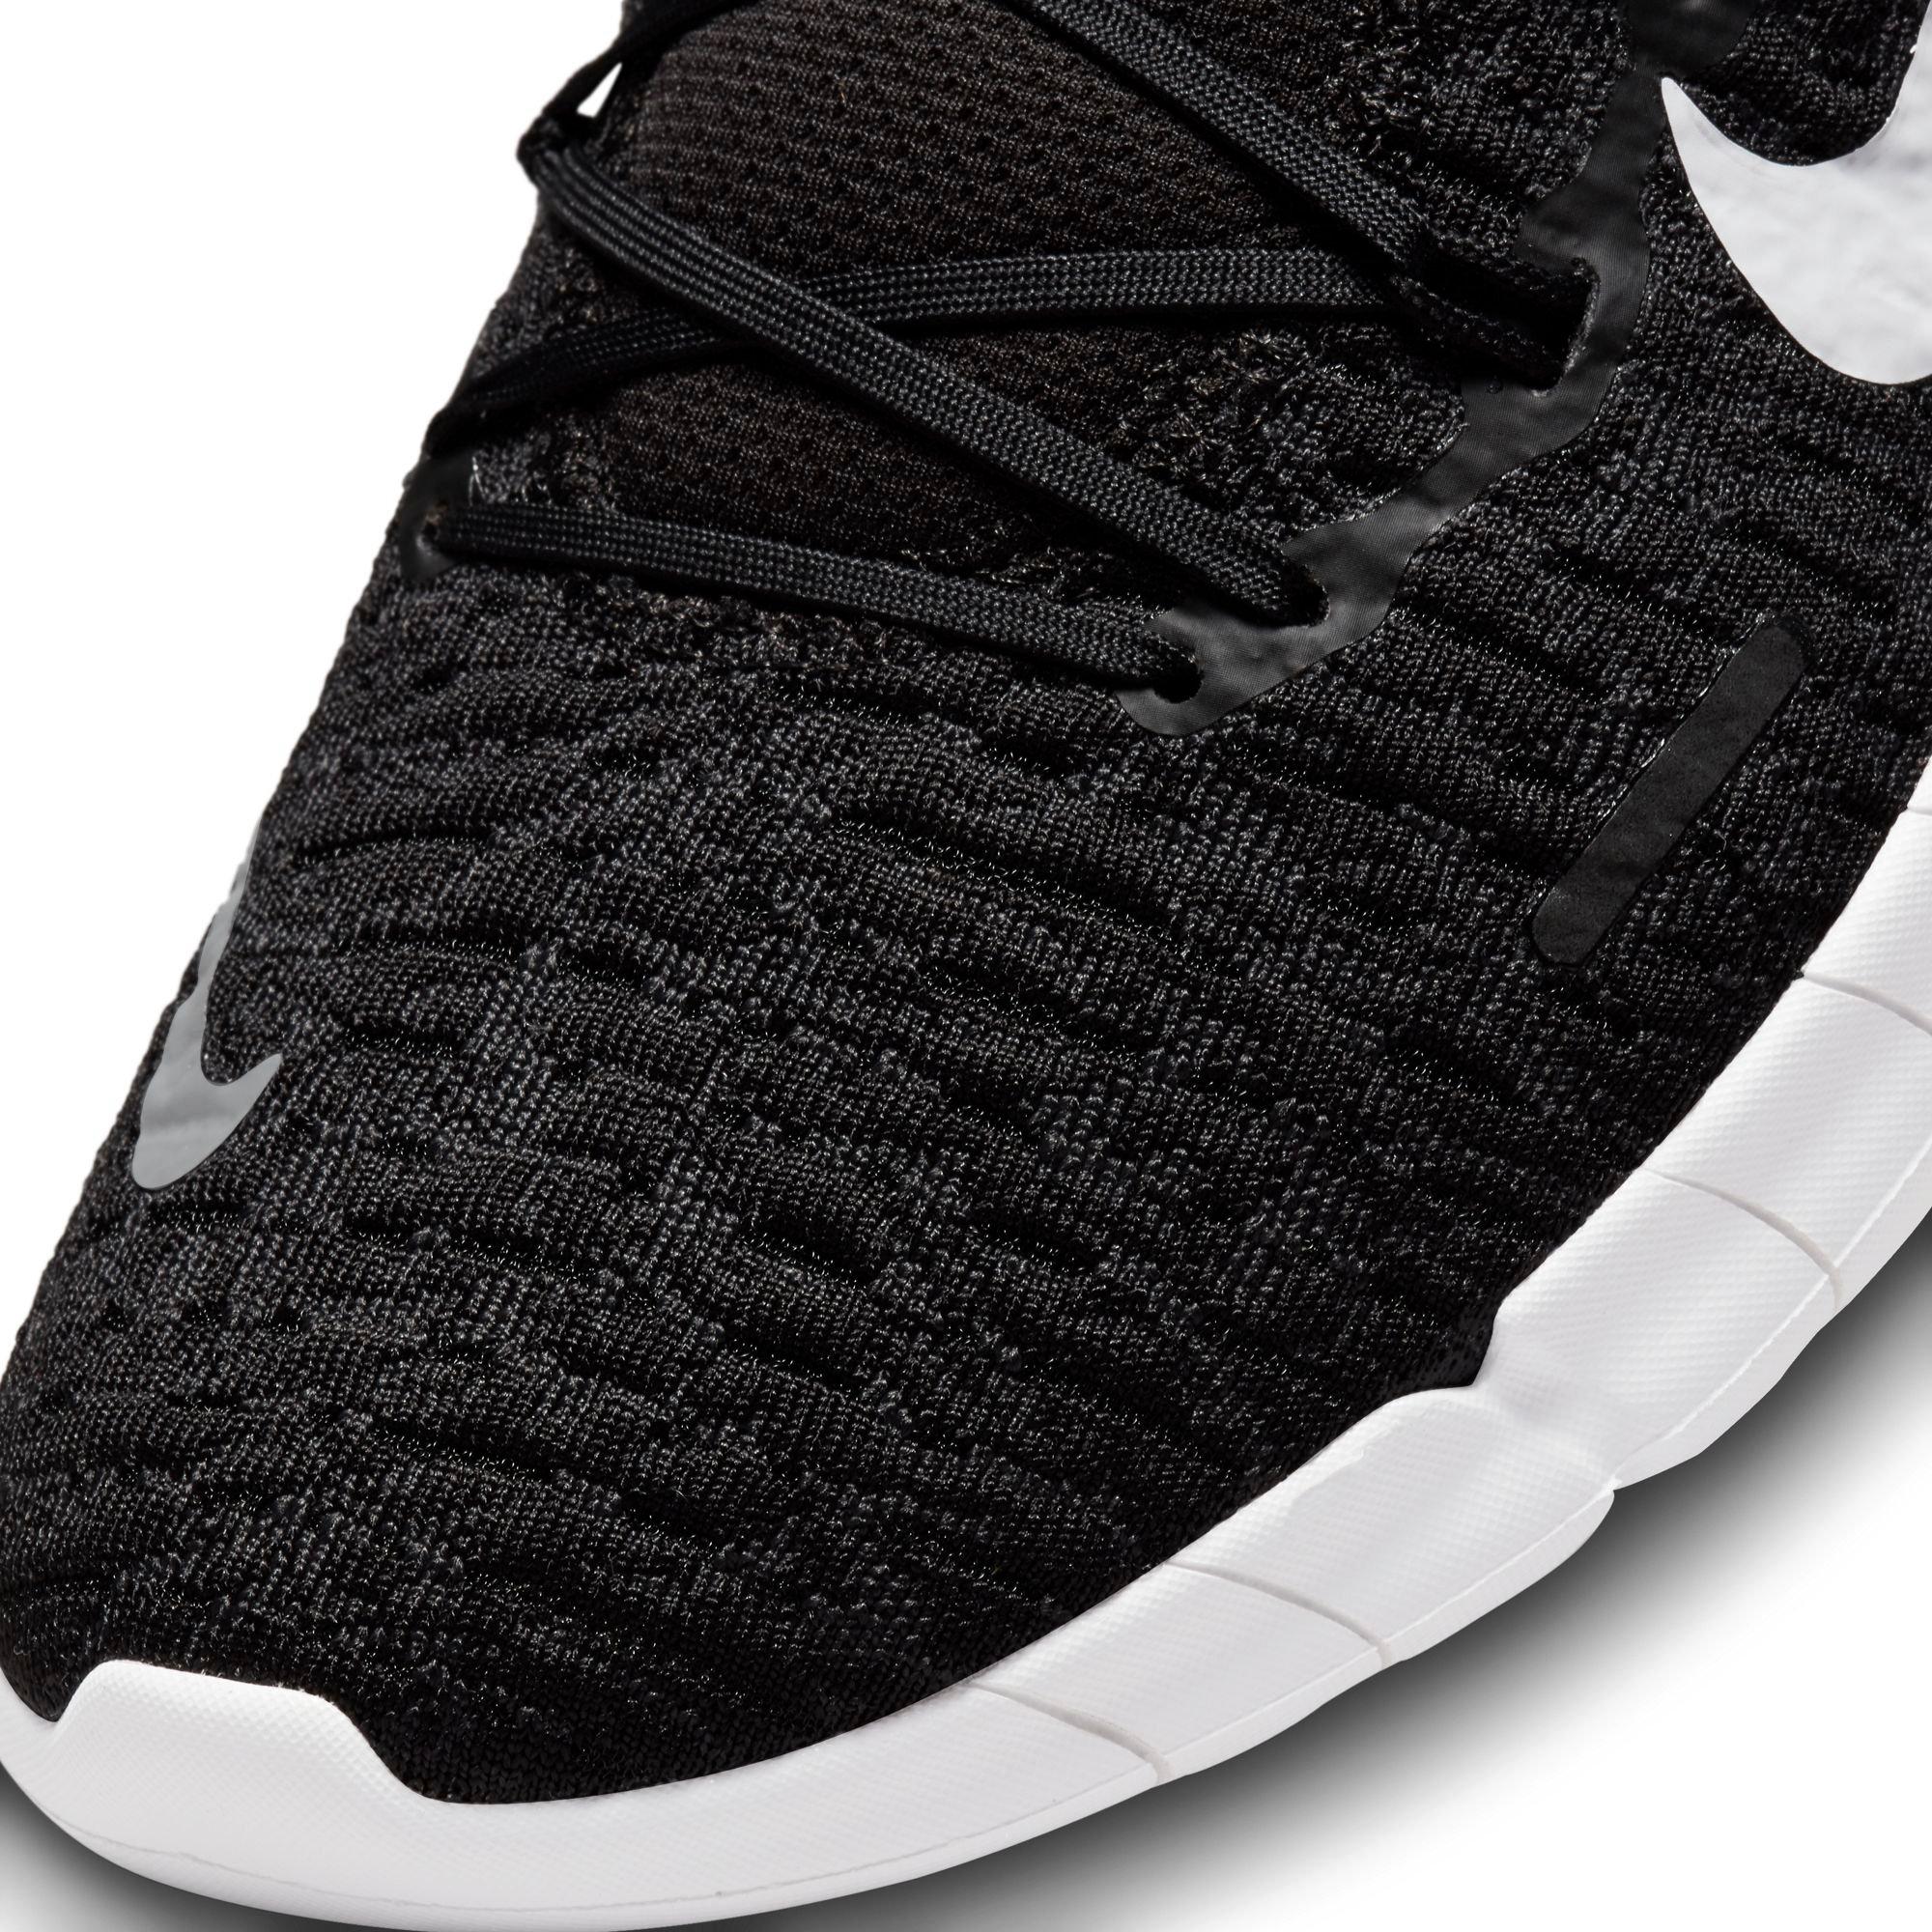 Nike Free "Black/White/Smoke Grey" Running Shoe